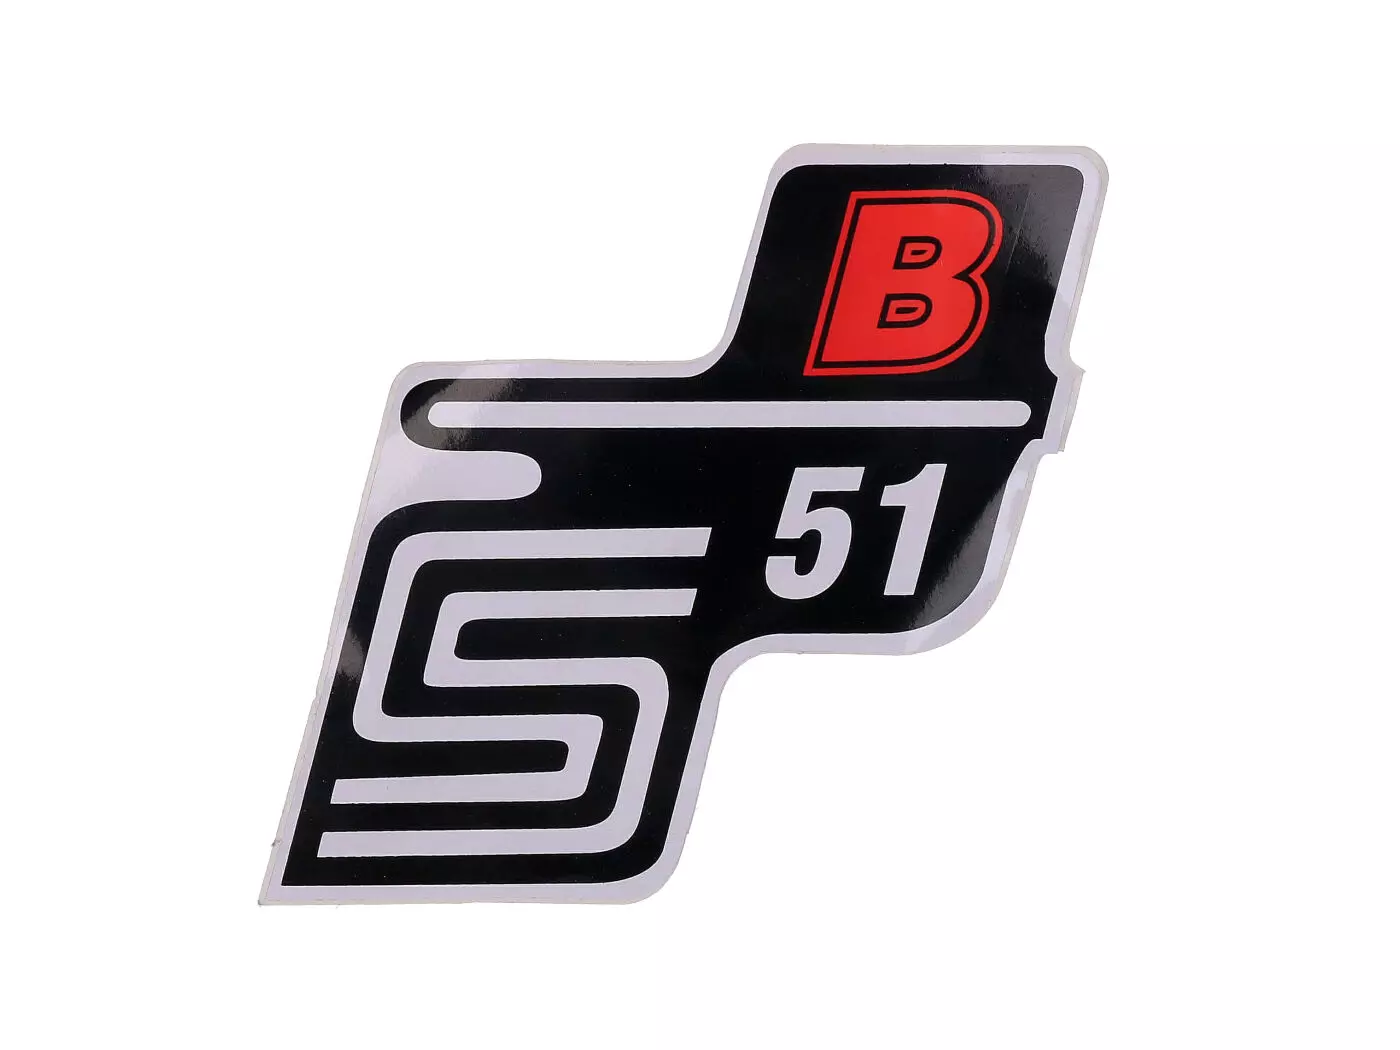 Logo Foil / Sticker S51 B Red For Simson S51